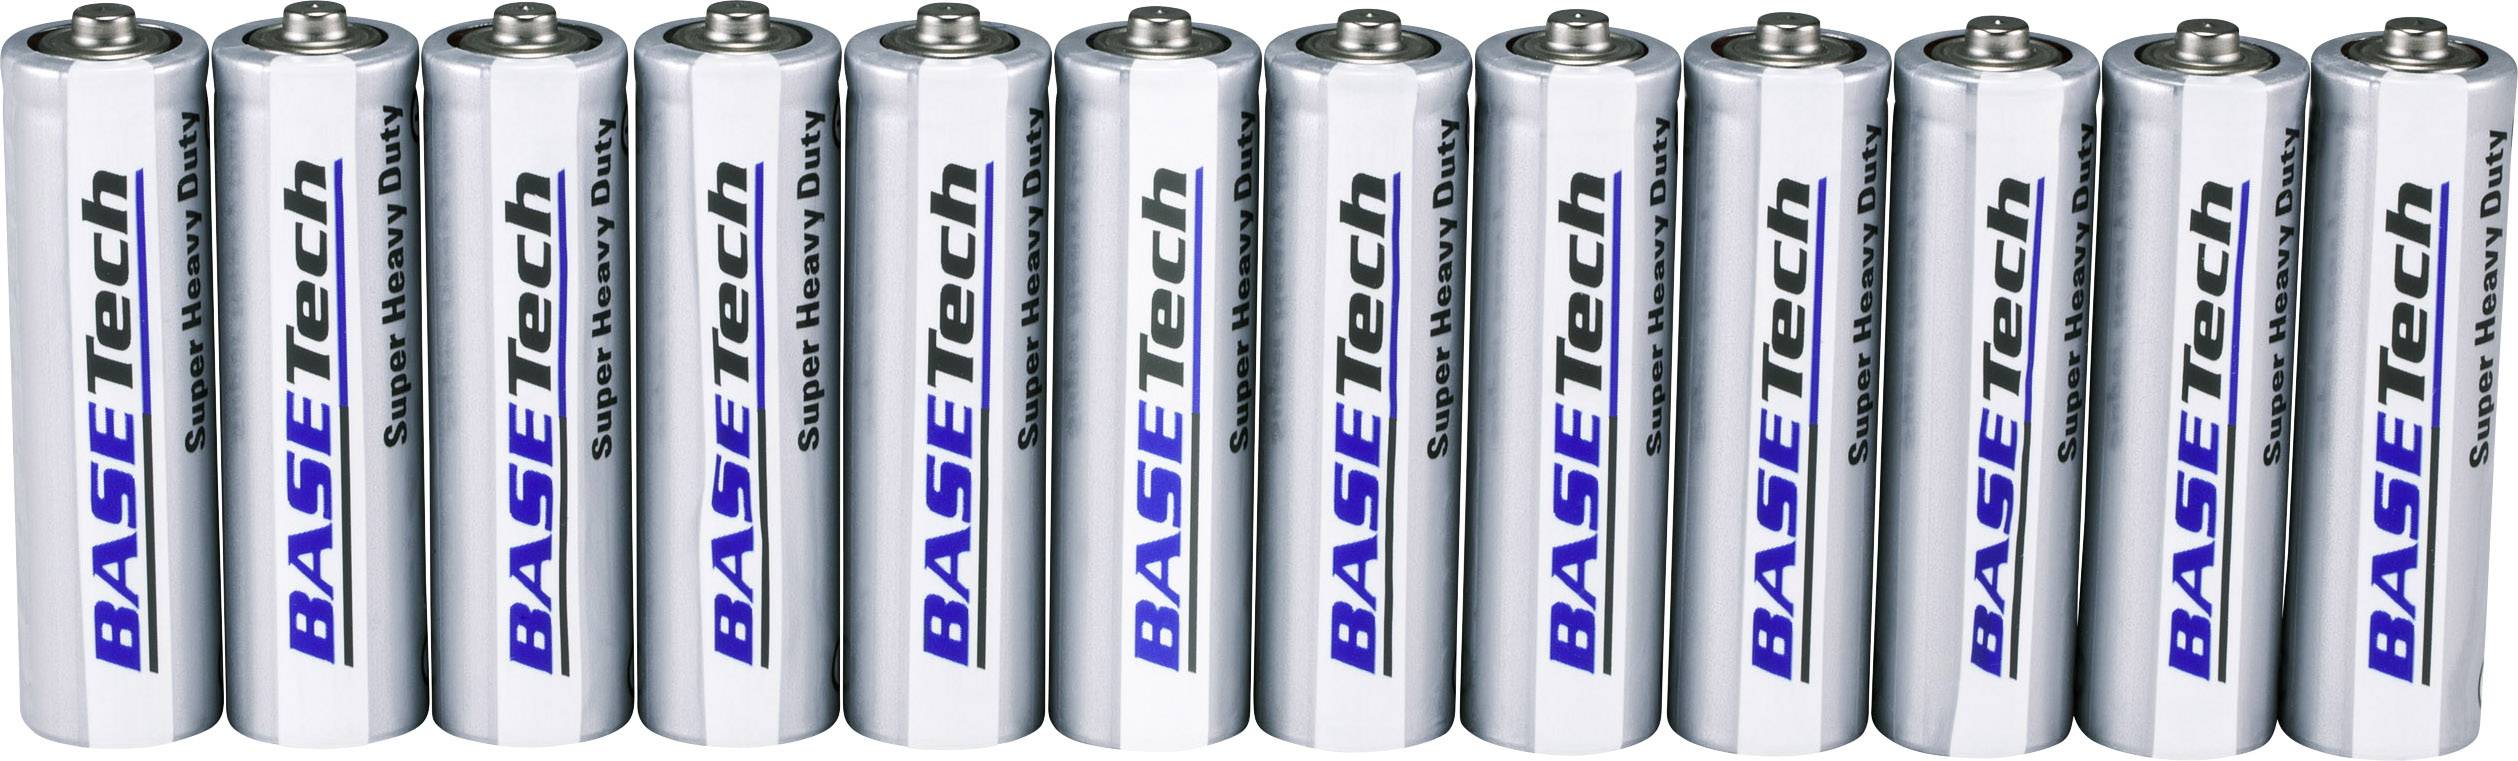 Batterie 36x Panasonic Batterien R06 Zink / Kohle TYP: R06 AA 0,30€/Stk. 